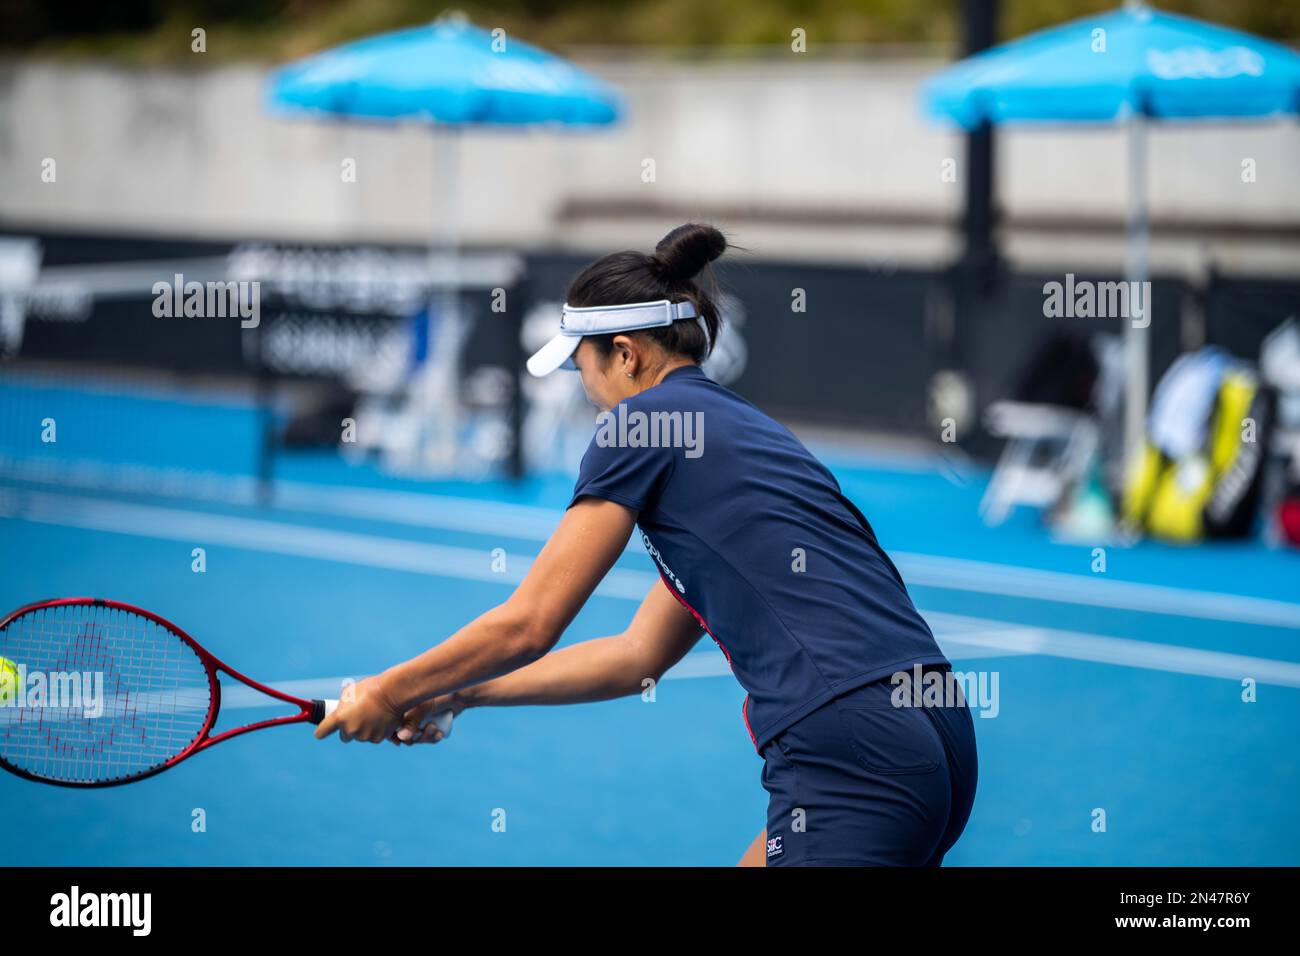 Joueur de tennis servant dans un match de tennis, avec un entraînement de jambe dans une partie de sport Banque D'Images